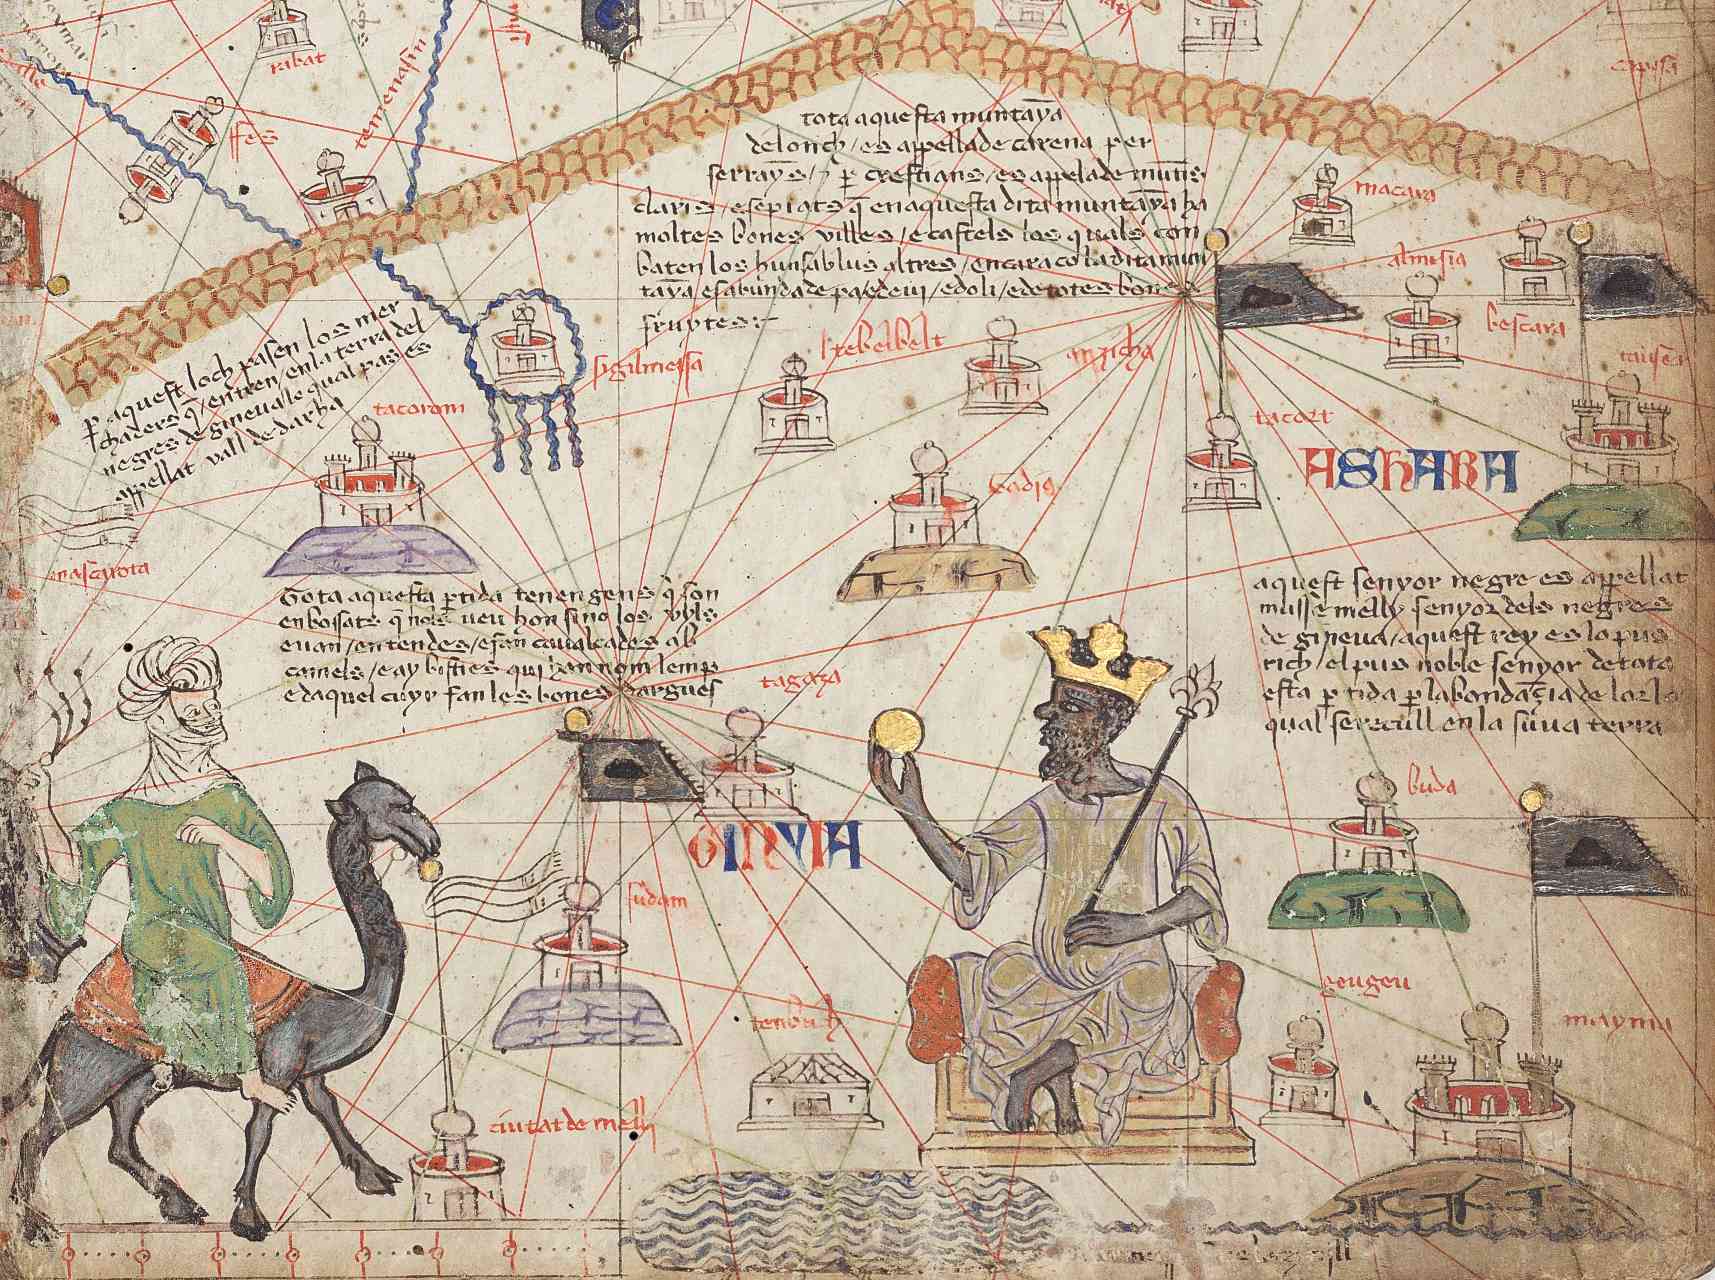 Butiran daripada Catalan Atlas Sheet 6 yang menunjukkan Sahara Barat. Pergunungan Atlas berada di bahagian atas dan Sungai Niger di bahagian bawah. Mansa Musa ditunjukkan duduk di atas takhta dan memegang syiling emas.